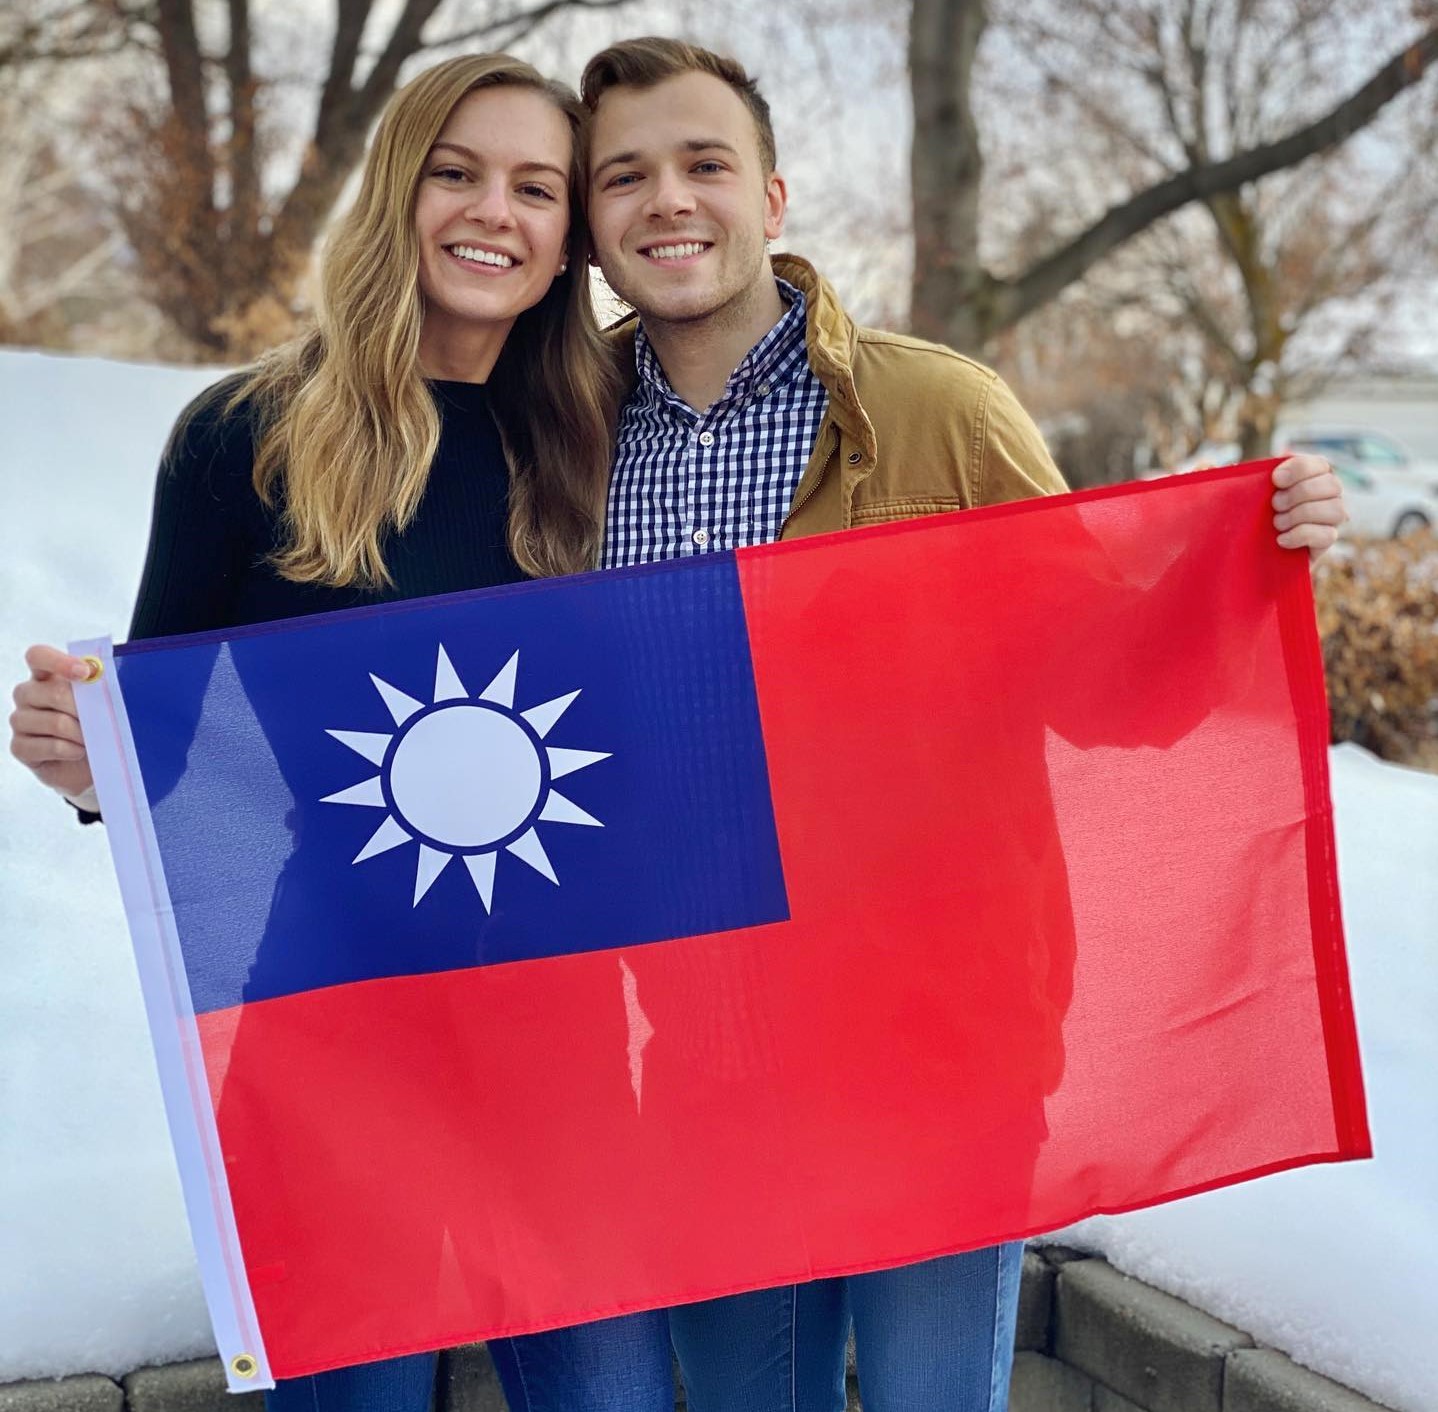 美籍YouTuber莫彩曦Hailey（左）和老公Adam（右），經常在YouTube上傳一些中美文化差異的影片，頻道吸引73.5萬位粉絲支持，這次他們分享在台灣的外國人對台的感謝。   圖：翻攝自Hailey莫彩曦臉書